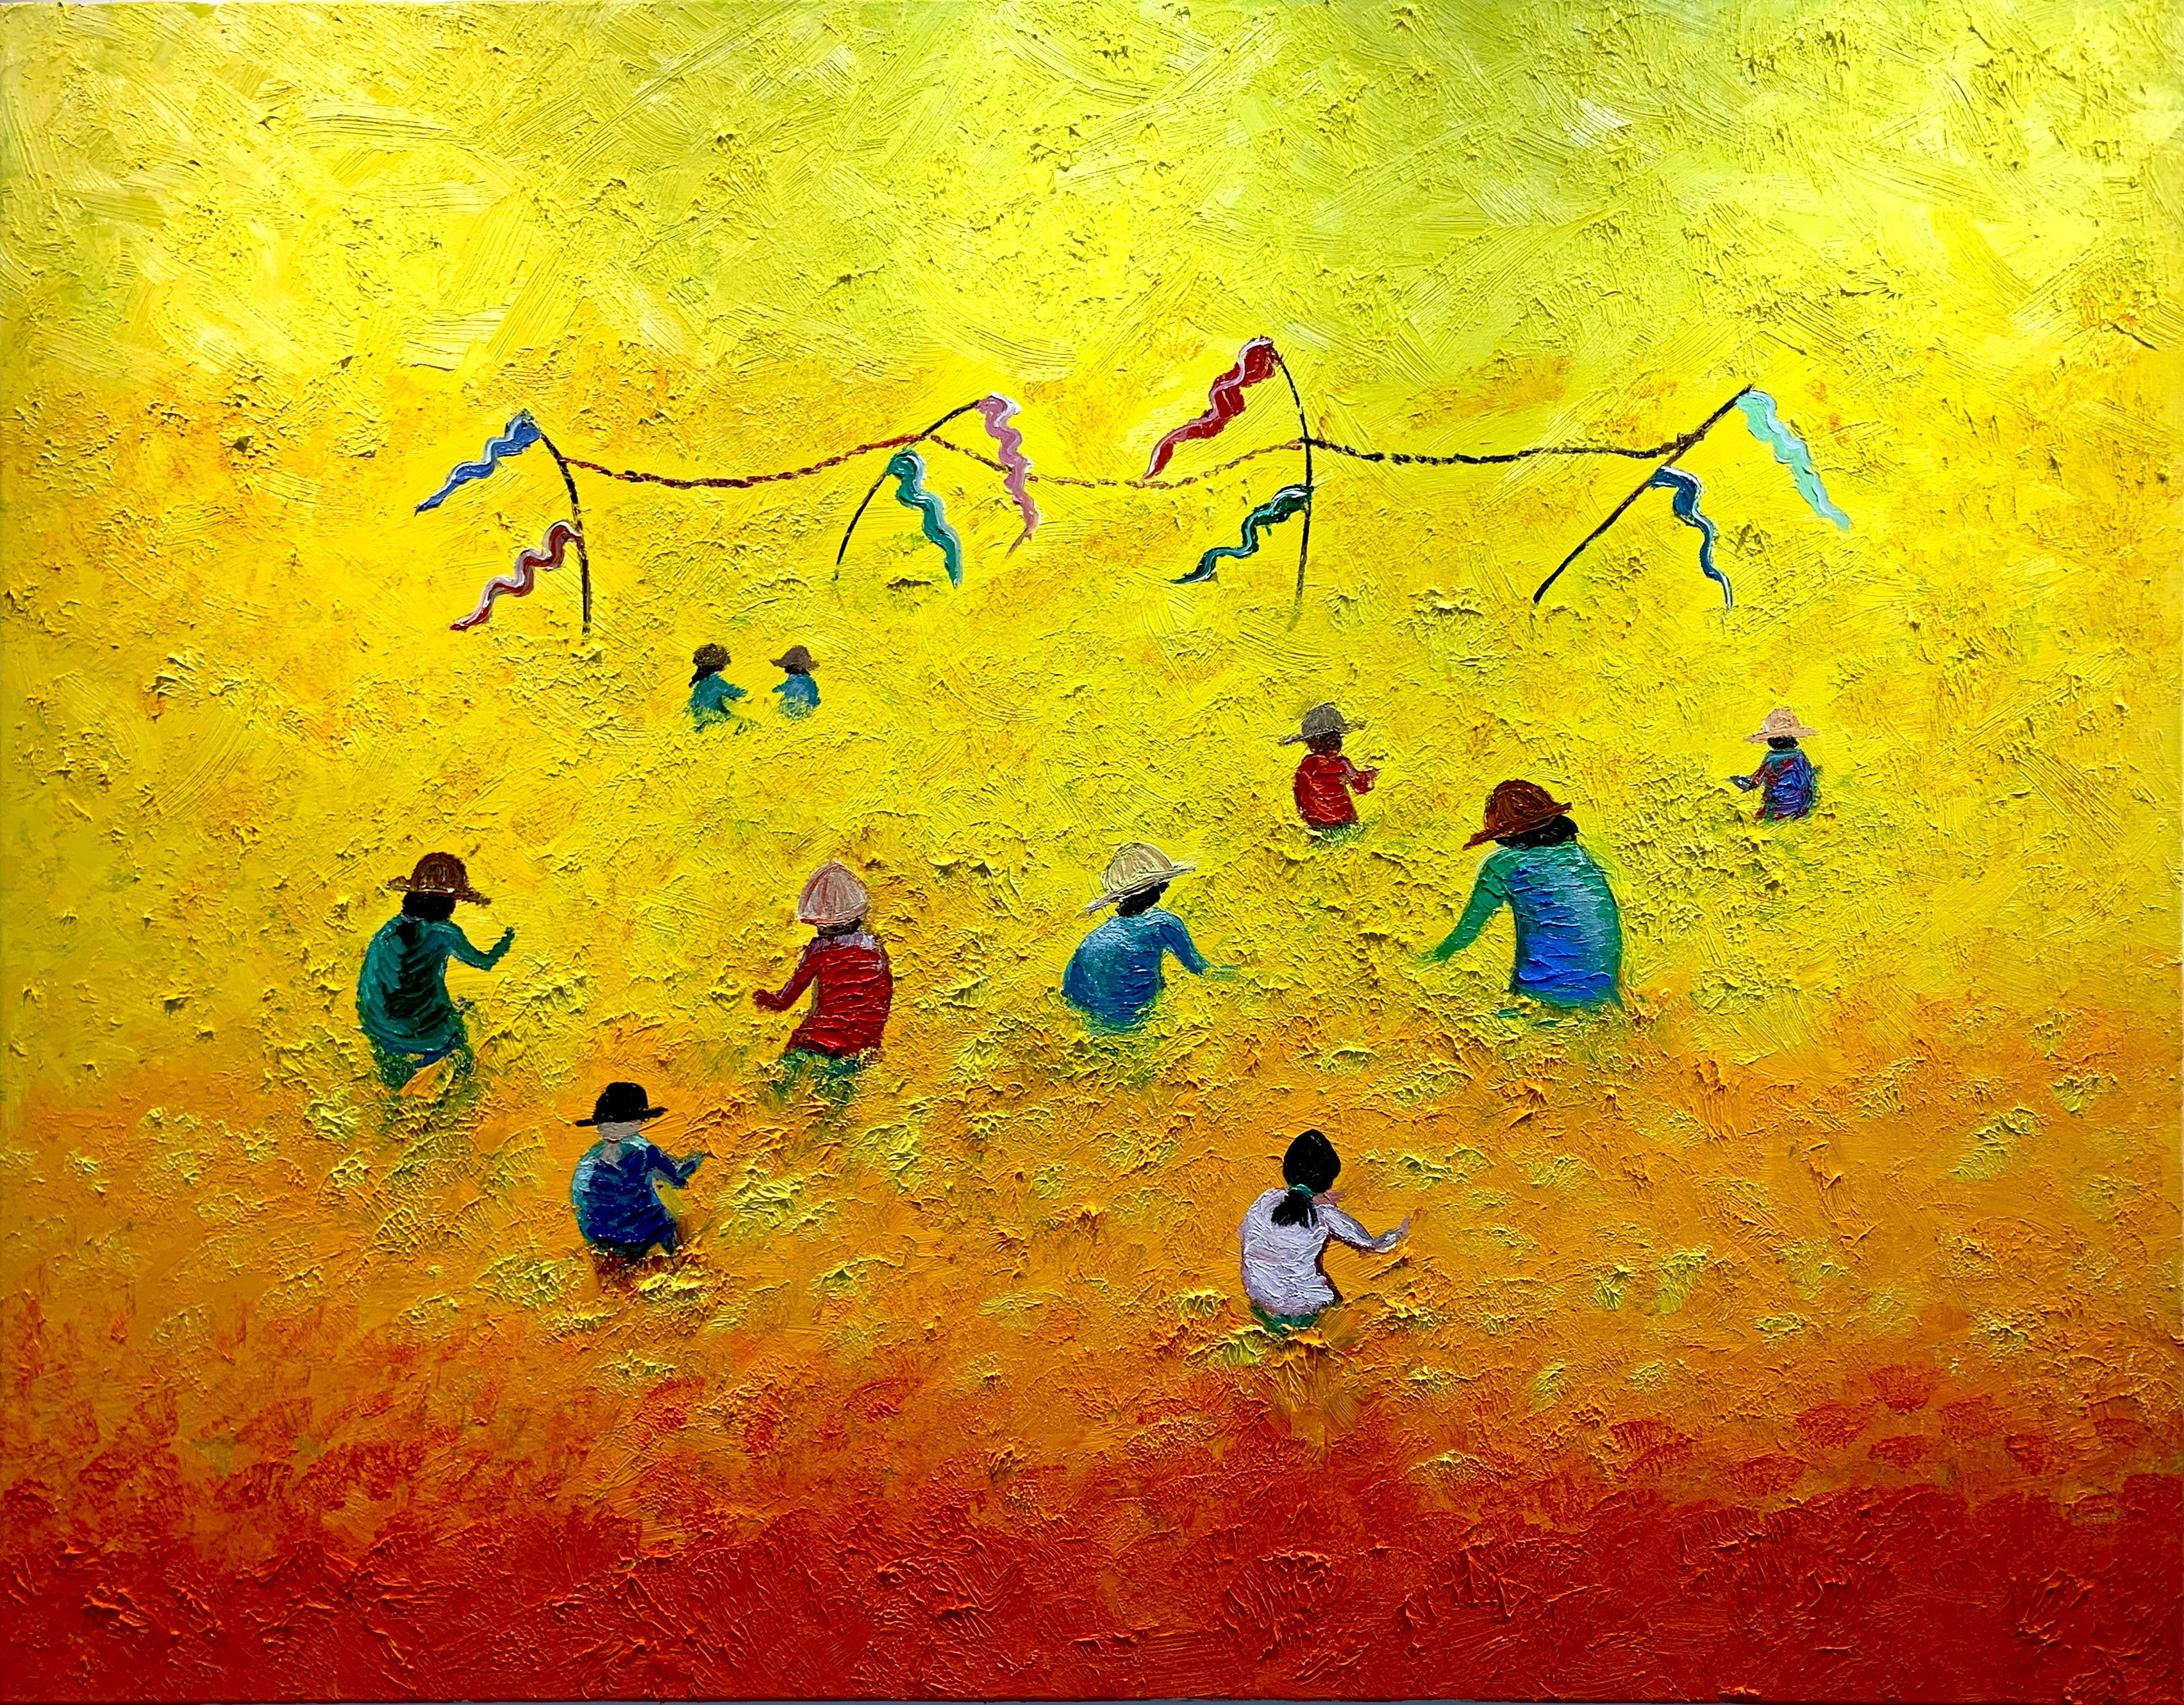 Fields de couchers de soleil de Katharina Husslein - grande peinture à l'huile abstraite contemporaine 